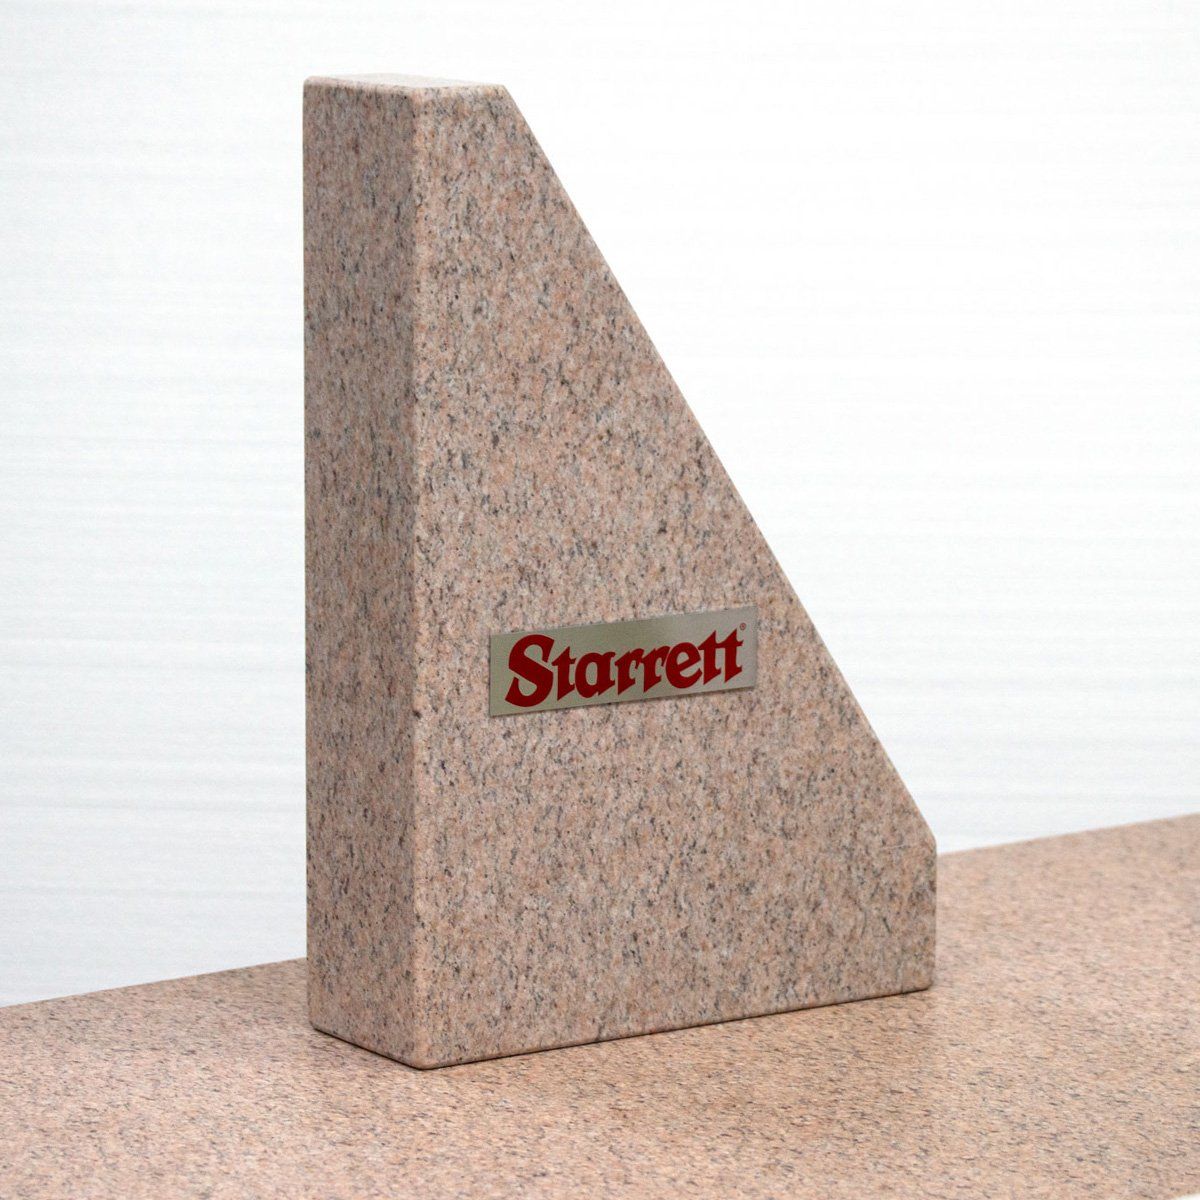 Pink granite tri-square with Starrett logo